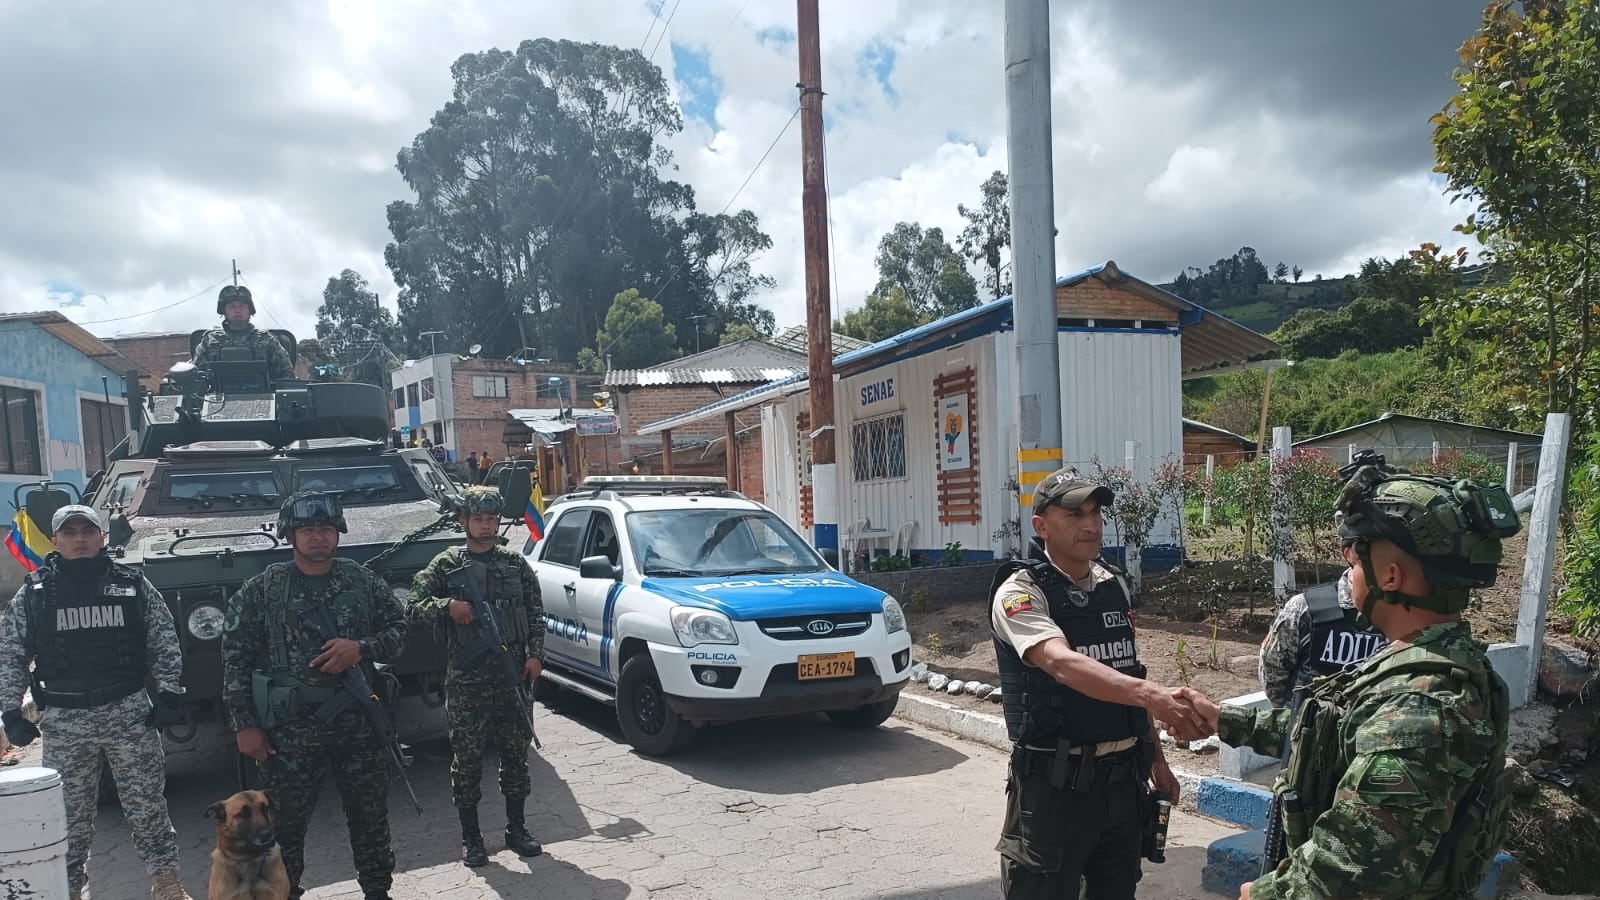 Colombia despliega cerca de 180 militares en la frontera con Ecuador